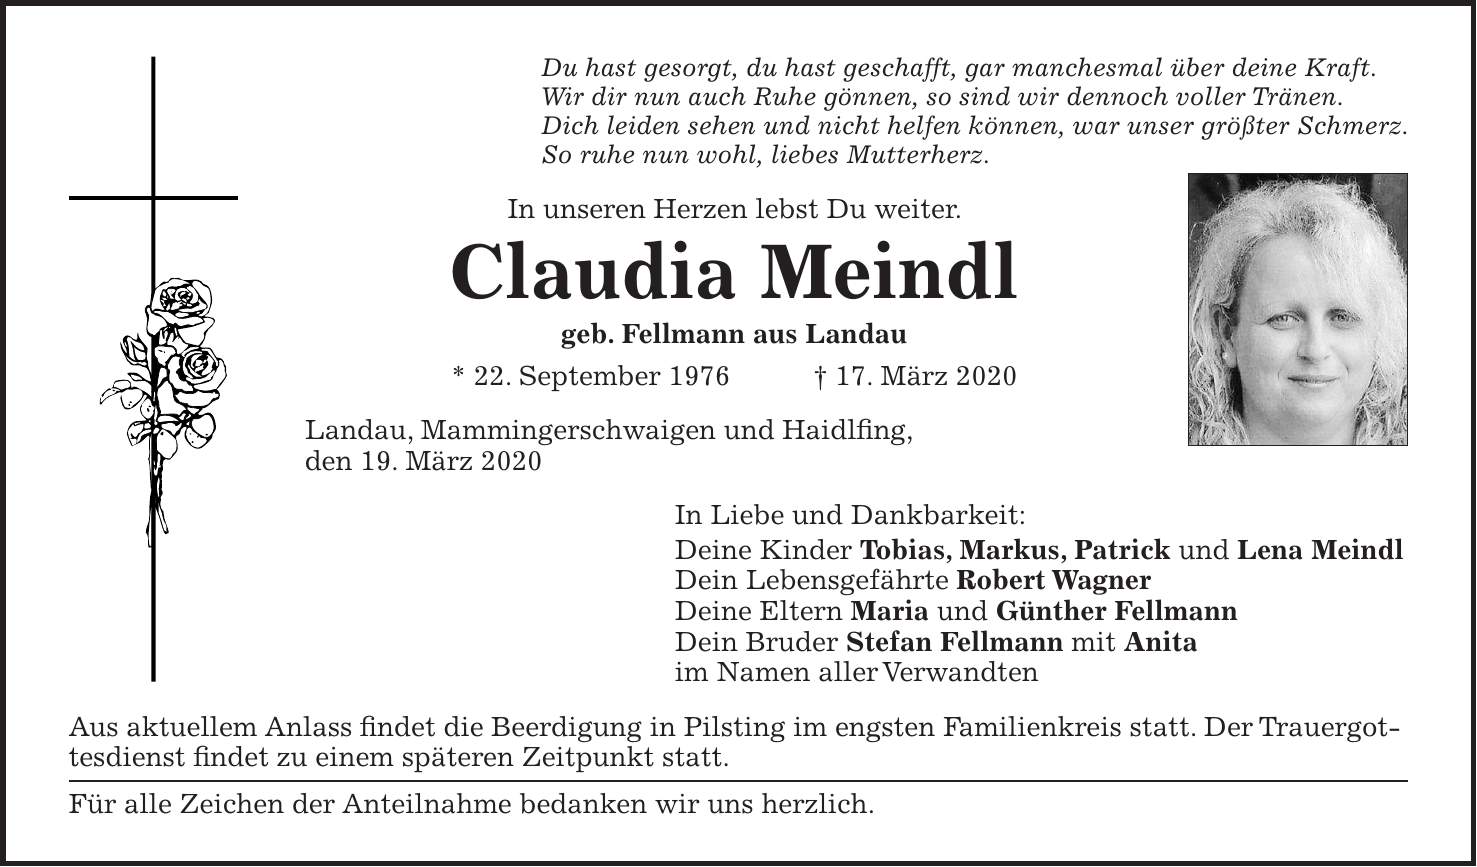 Du hast gesorgt, du hast geschafft, gar manchesmal über deine Kraft. Wir dir nun auch Ruhe gönnen, so sind wir dennoch voller Tränen. Dich leiden sehen und nicht helfen können, war unser größter Schmerz. So ruhe nun wohl, liebes Mutterherz. In unseren Herzen lebst Du weiter. Claudia Meindl geb. Fellmann aus Landau * 22. September 1976 + 17. März 2020 Landau, Mammingerschwaigen und Haidlfing, den 19. März 2020 In Liebe und Dankbarkeit: Deine Kinder Tobias, Markus, Patrick und Lena Meindl Dein Lebensgefährte Robert Wagner Deine Eltern Maria und Günther Fellmann Dein Bruder Stefan Fellmann mit Anita im Namen aller Verwandten Aus aktuellem Anlass findet die Beerdigung in Pilsting im engsten Familienkreis statt. Der Trauergottesdienst findet zu einem späteren Zeitpunkt statt. Für alle Zeichen der Anteilnahme bedanken wir uns herzlich.